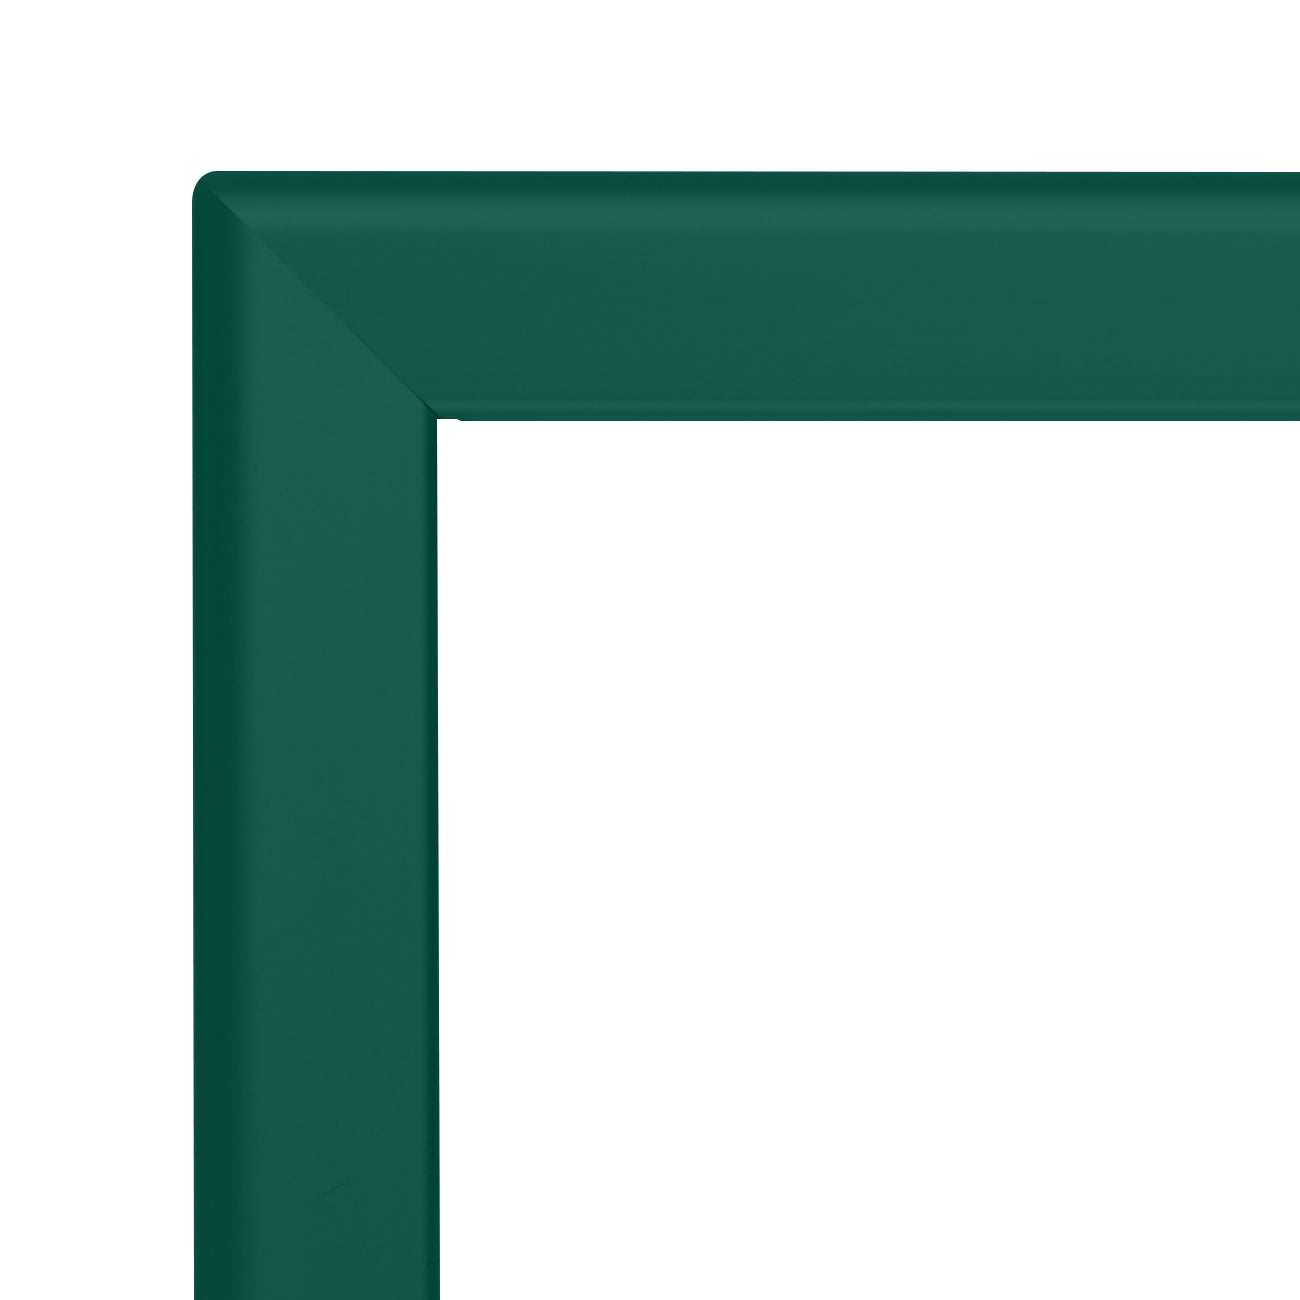 18x24 Green SnapeZo® Snap Frame - 1.25" Profile